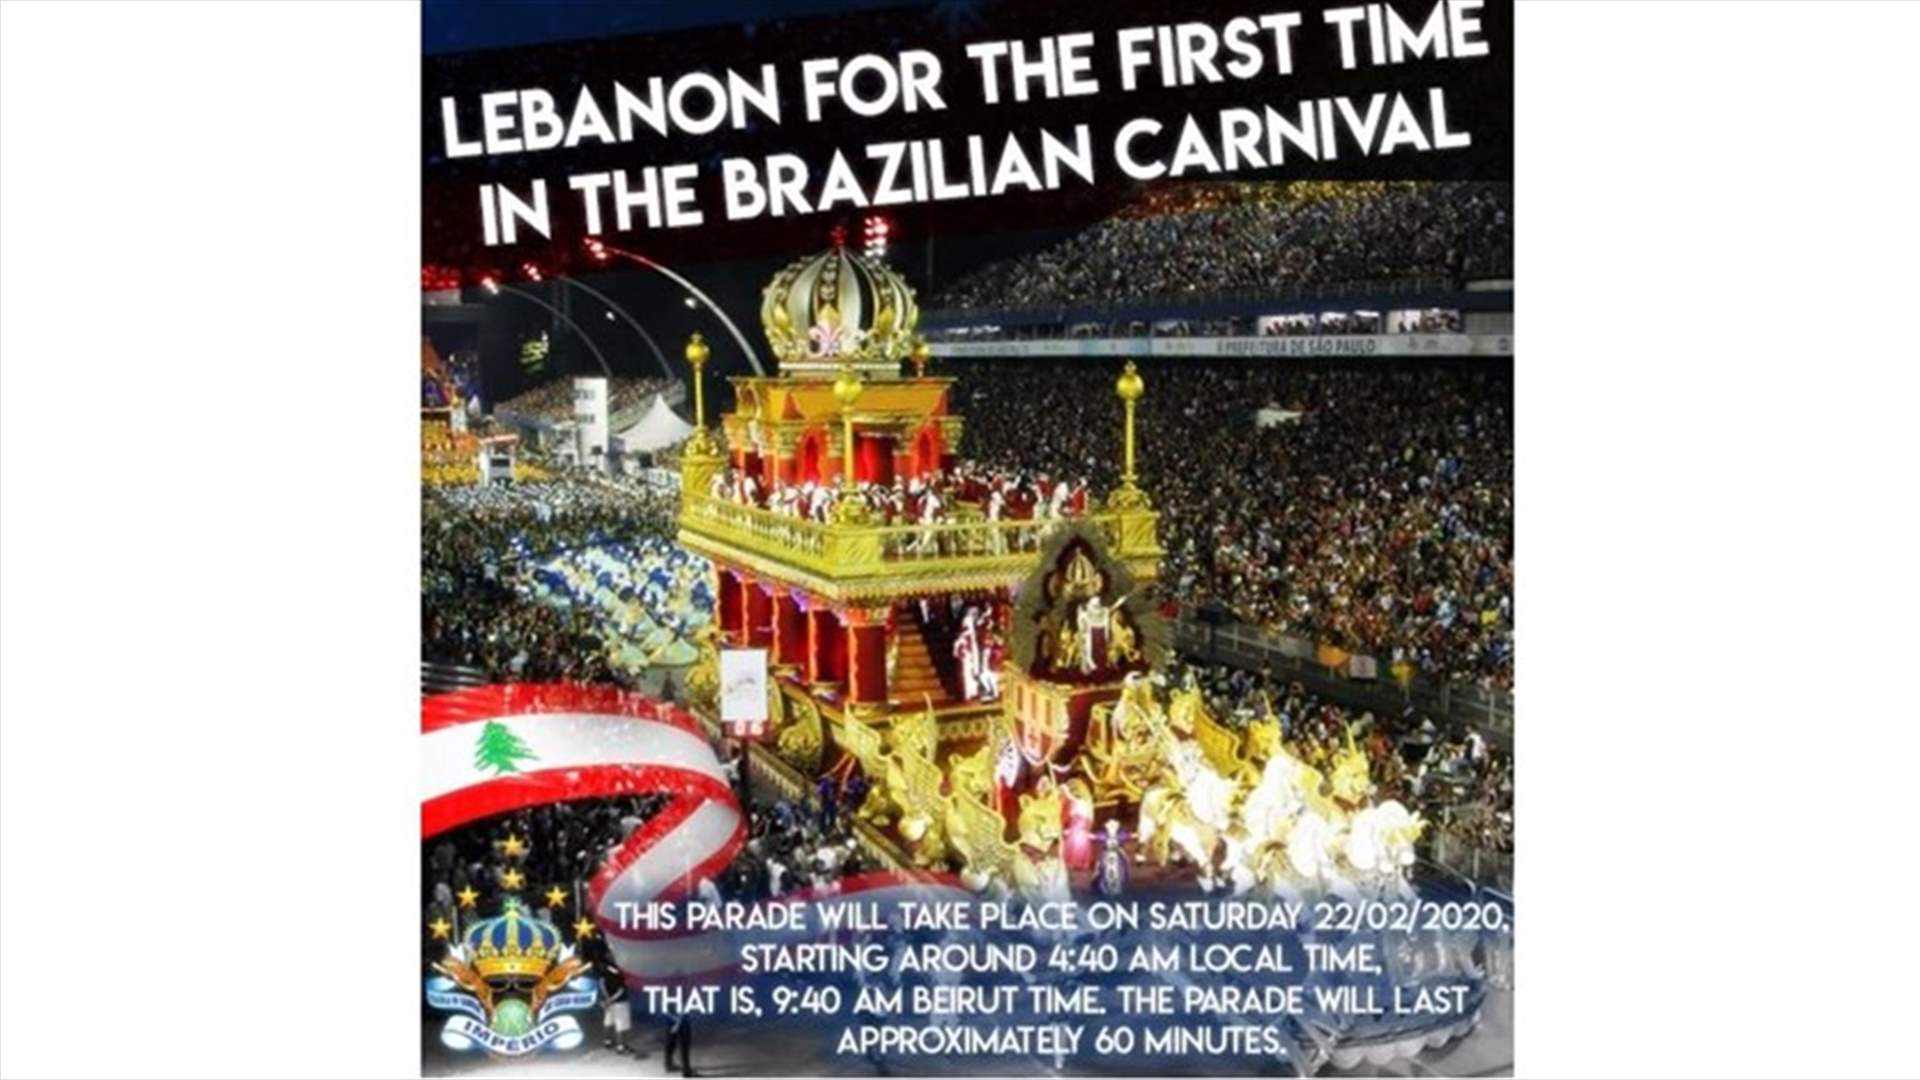 كارنفال السامبا البرازيلي وتحيّة خاصة للبنان هذا السبت على الـ&quot;LBCI&quot;